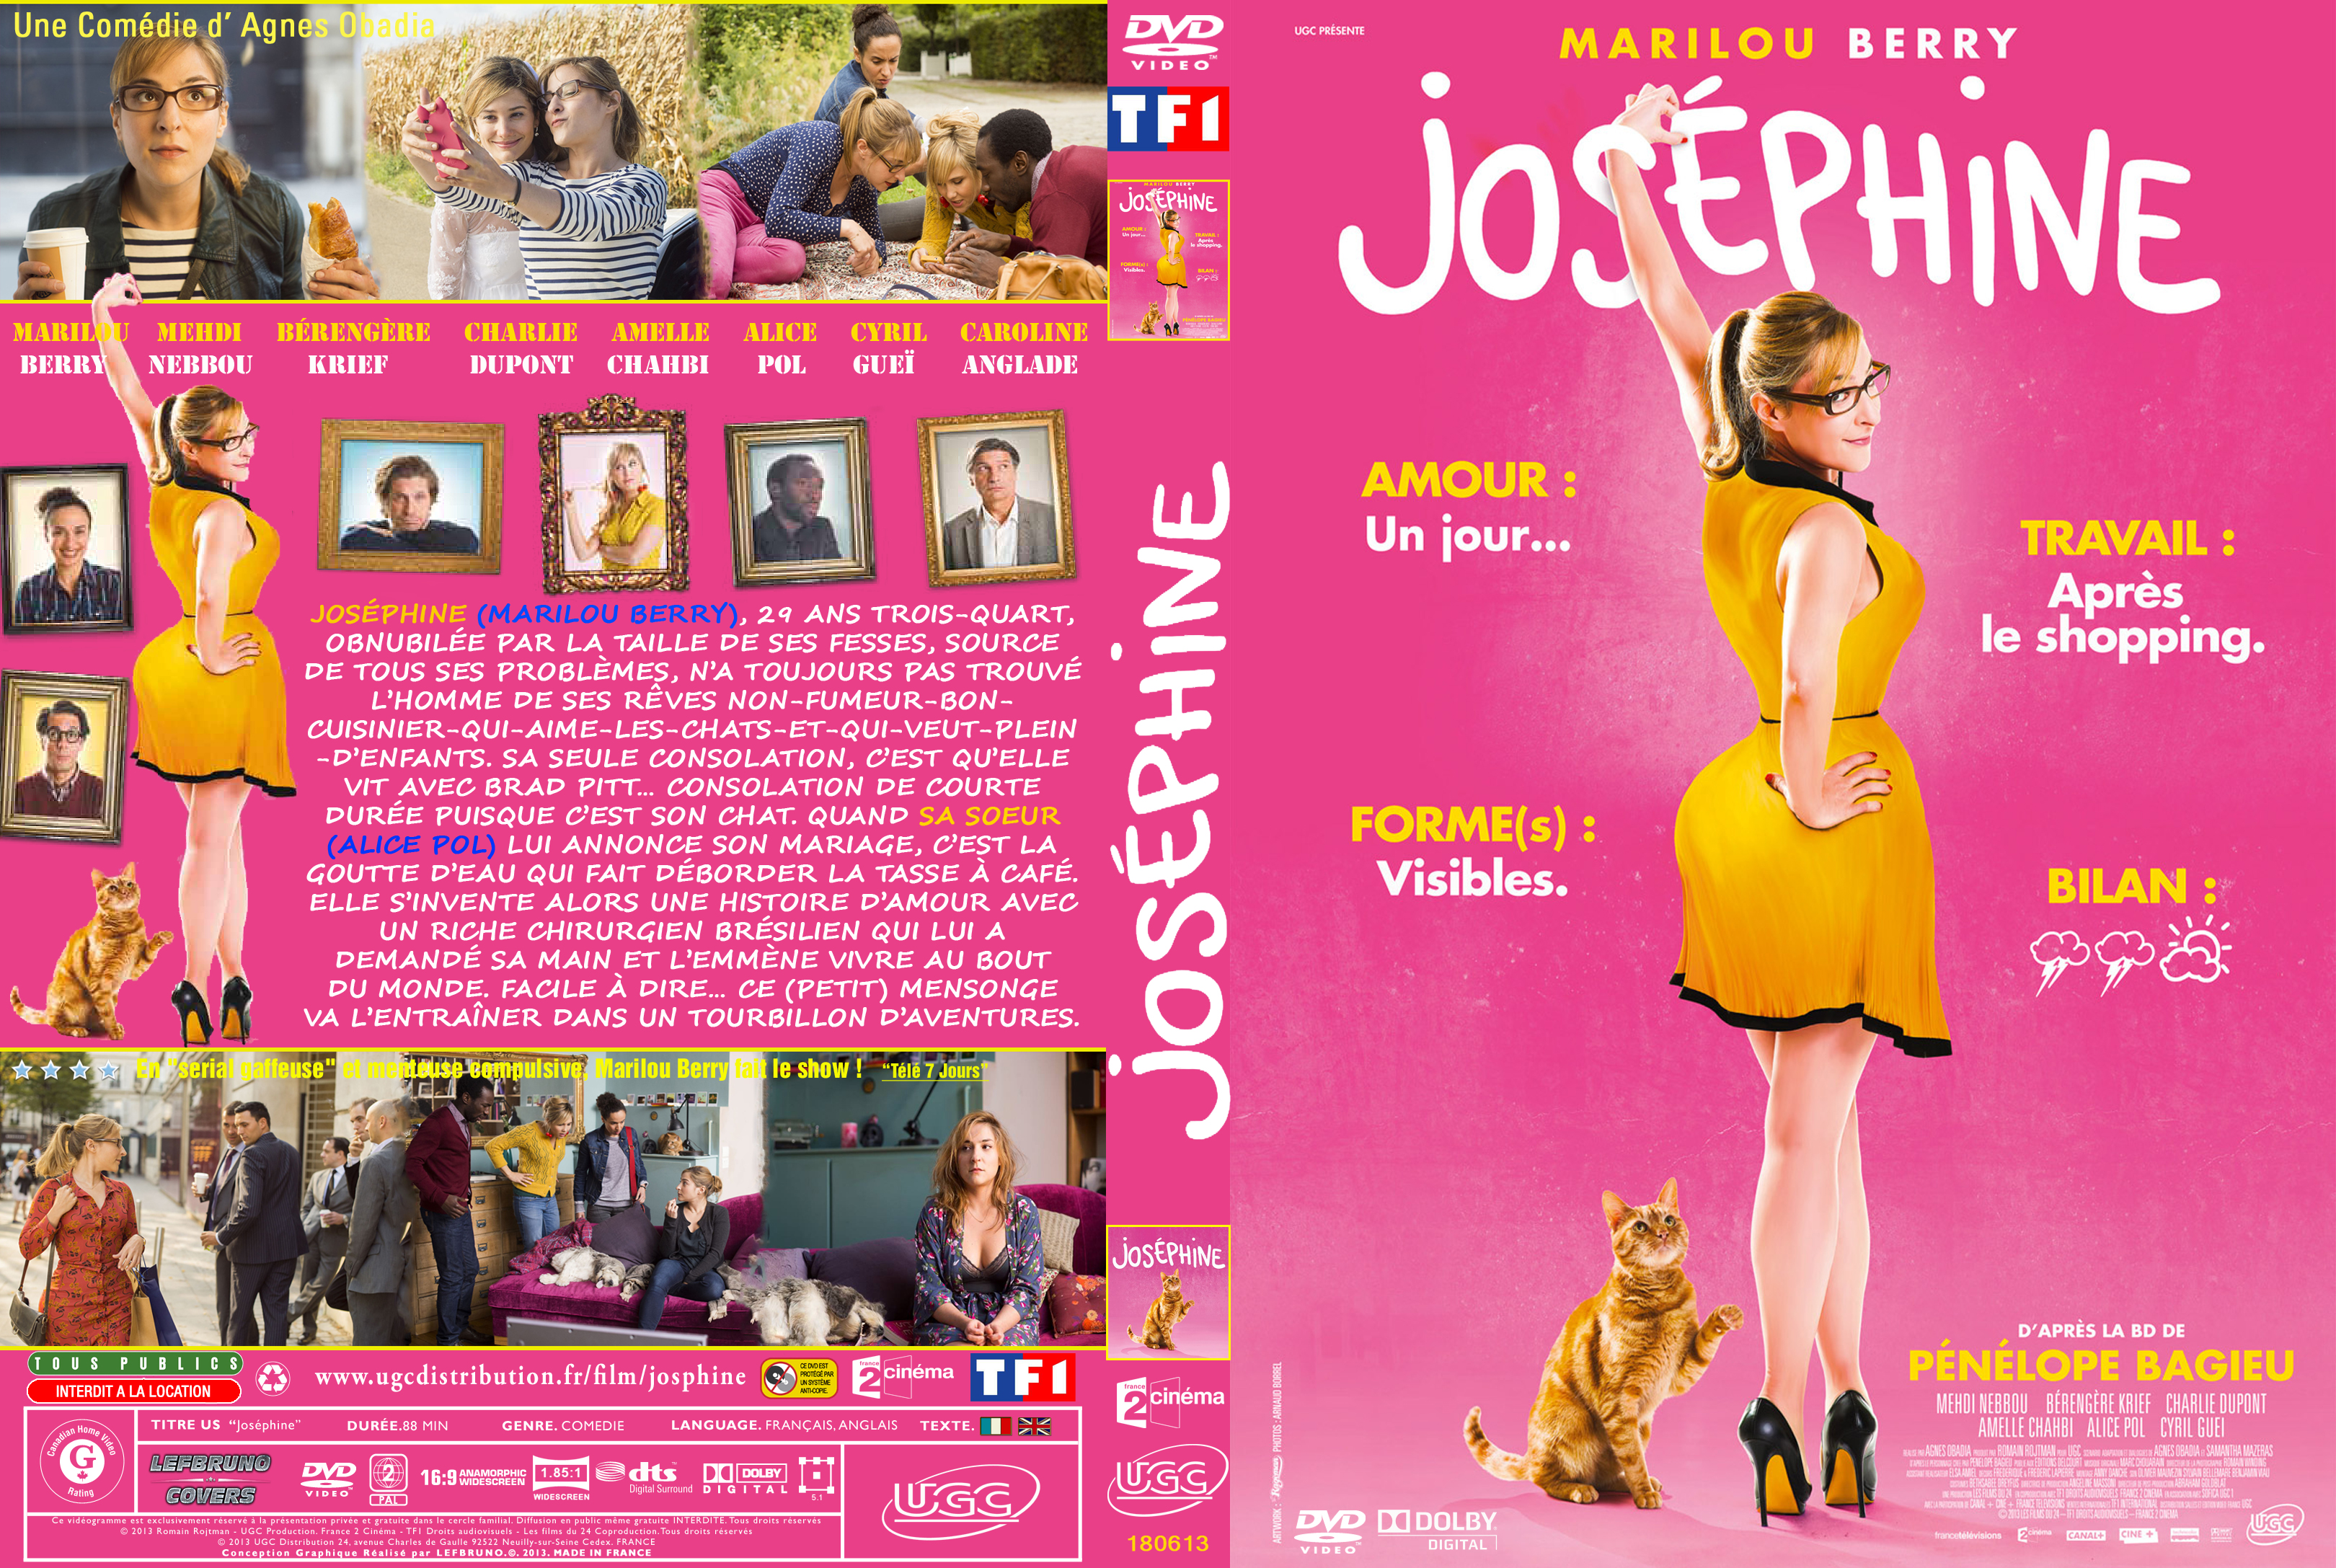 Jaquette DVD Josphine custom